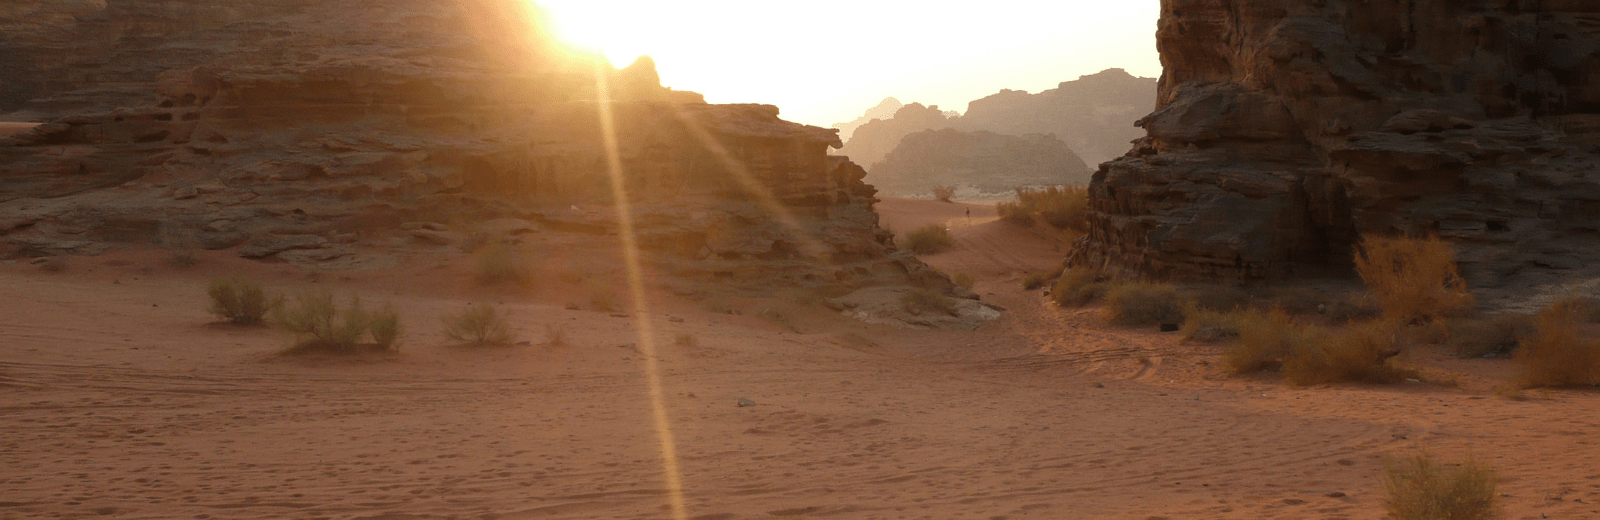 Yin yoga retraite in de woestijn, Jordanië